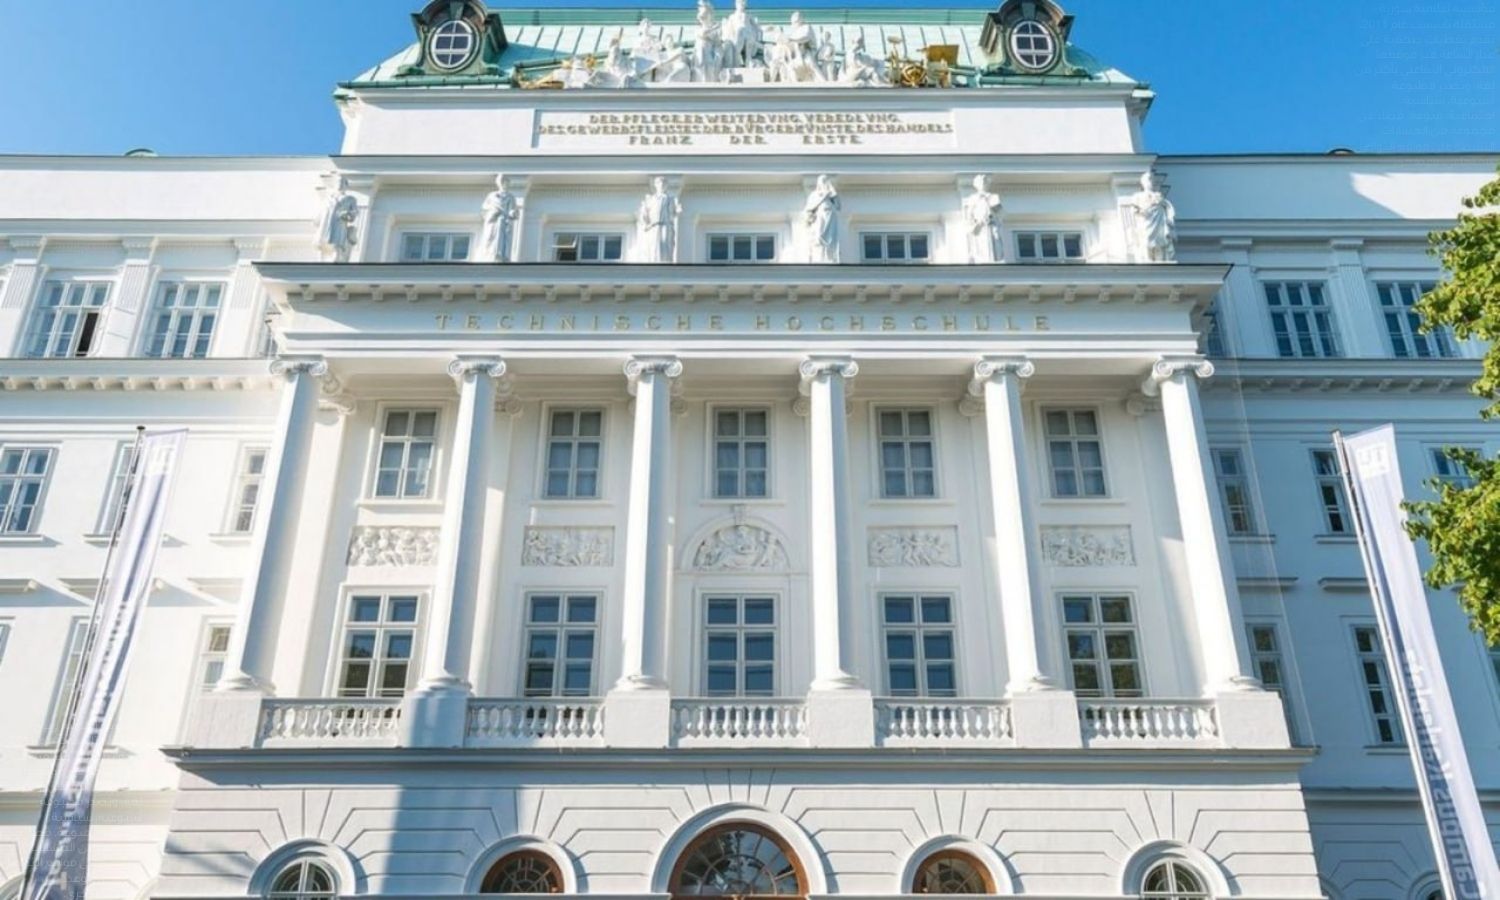 جامعة فيينا للتكنولوجيا والتقنية في النمسا- (انستجرام/ tu_wien)